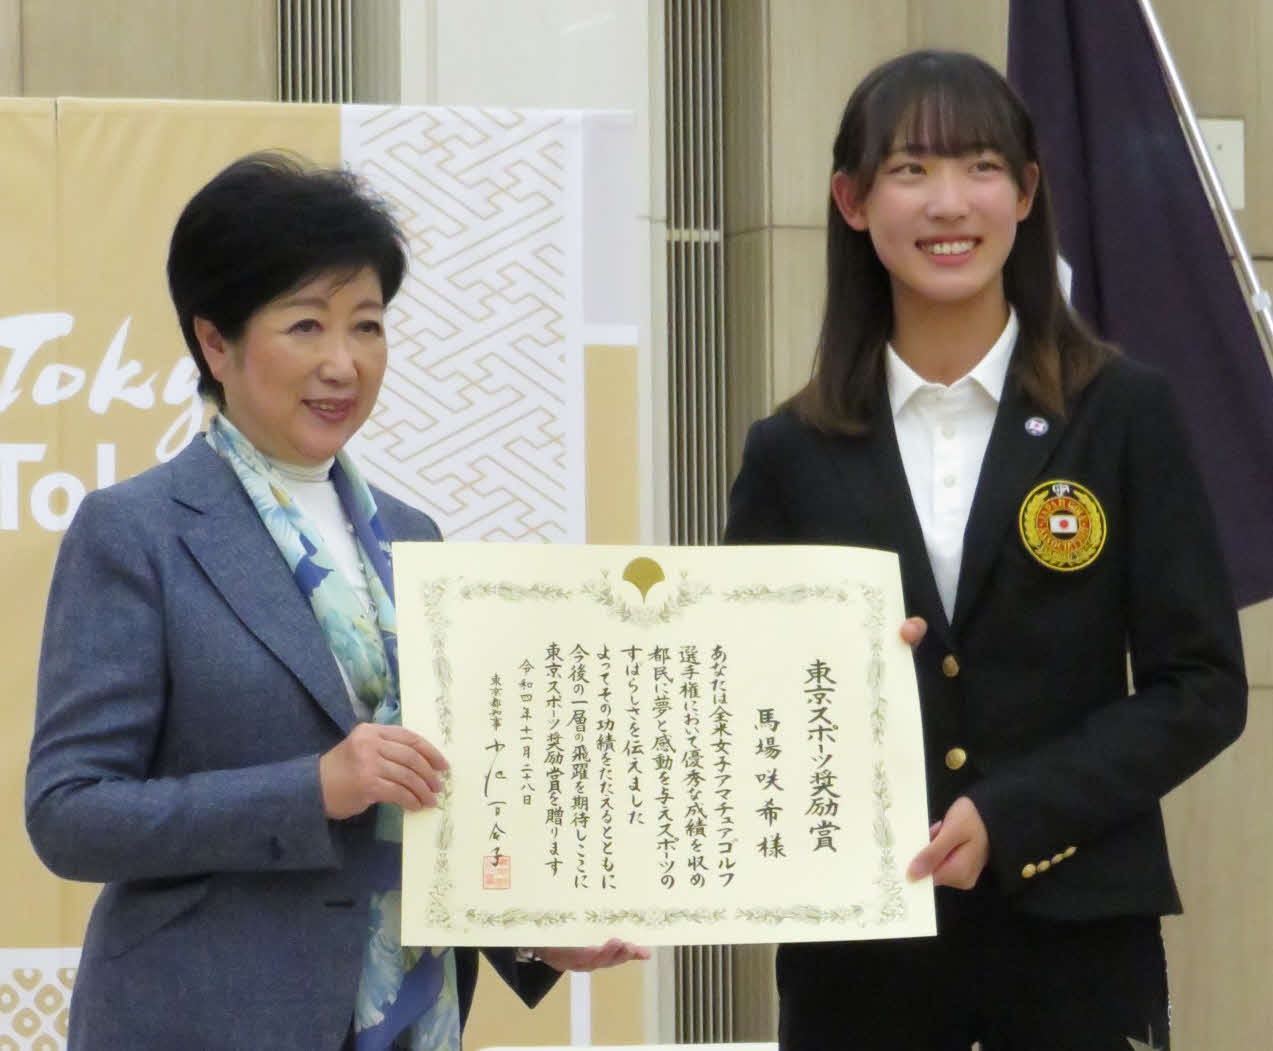 東京スポーツ奨励賞を受賞した馬場（右）は、東京都の小池知事から表彰状を受け取り笑顔を見せた